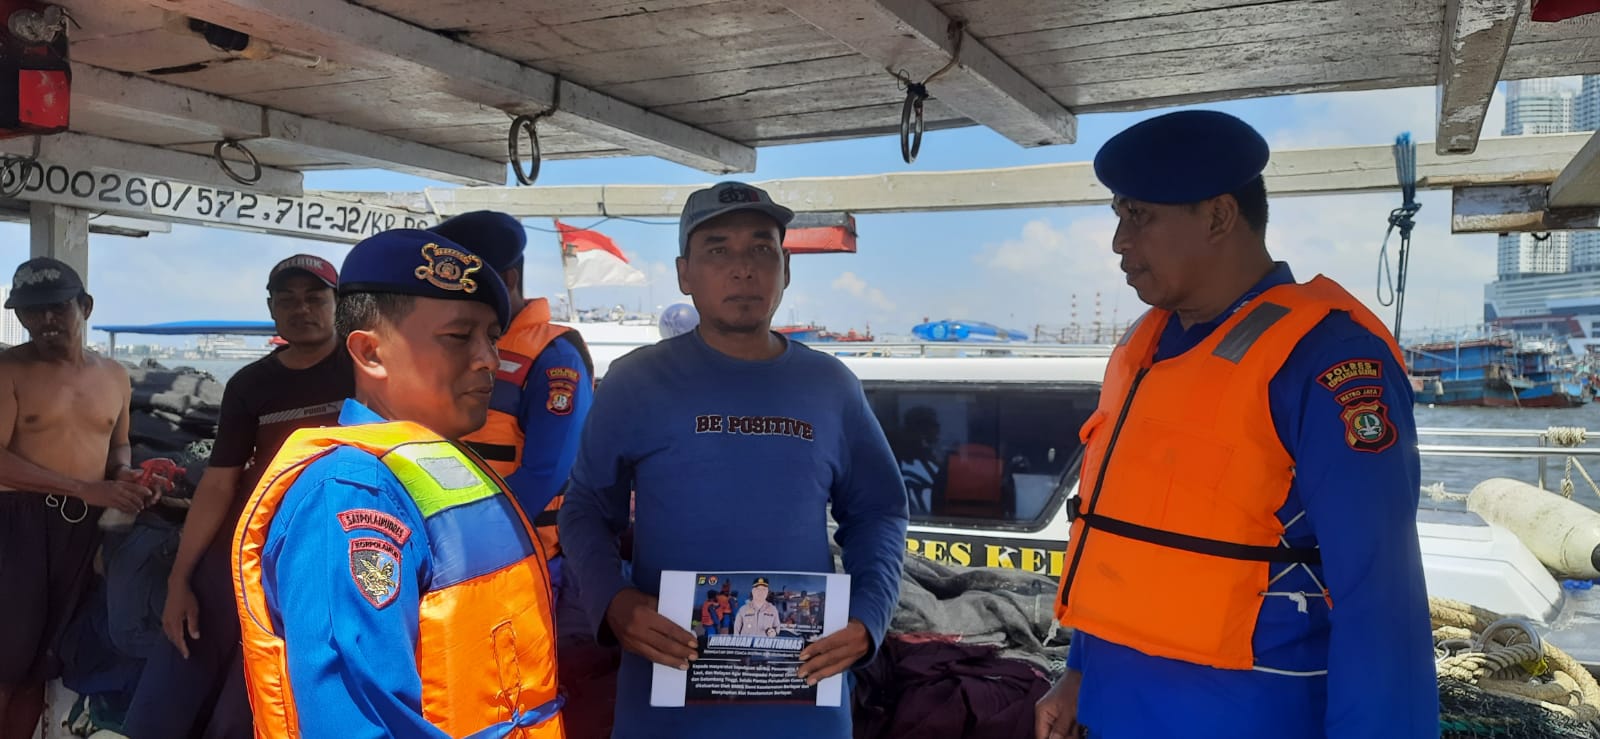 Patroli Satpolairud Polres Kepulauan Seribu Memastikan Keamanan dan Keselamatan di Perairan Kepulauan Seribu